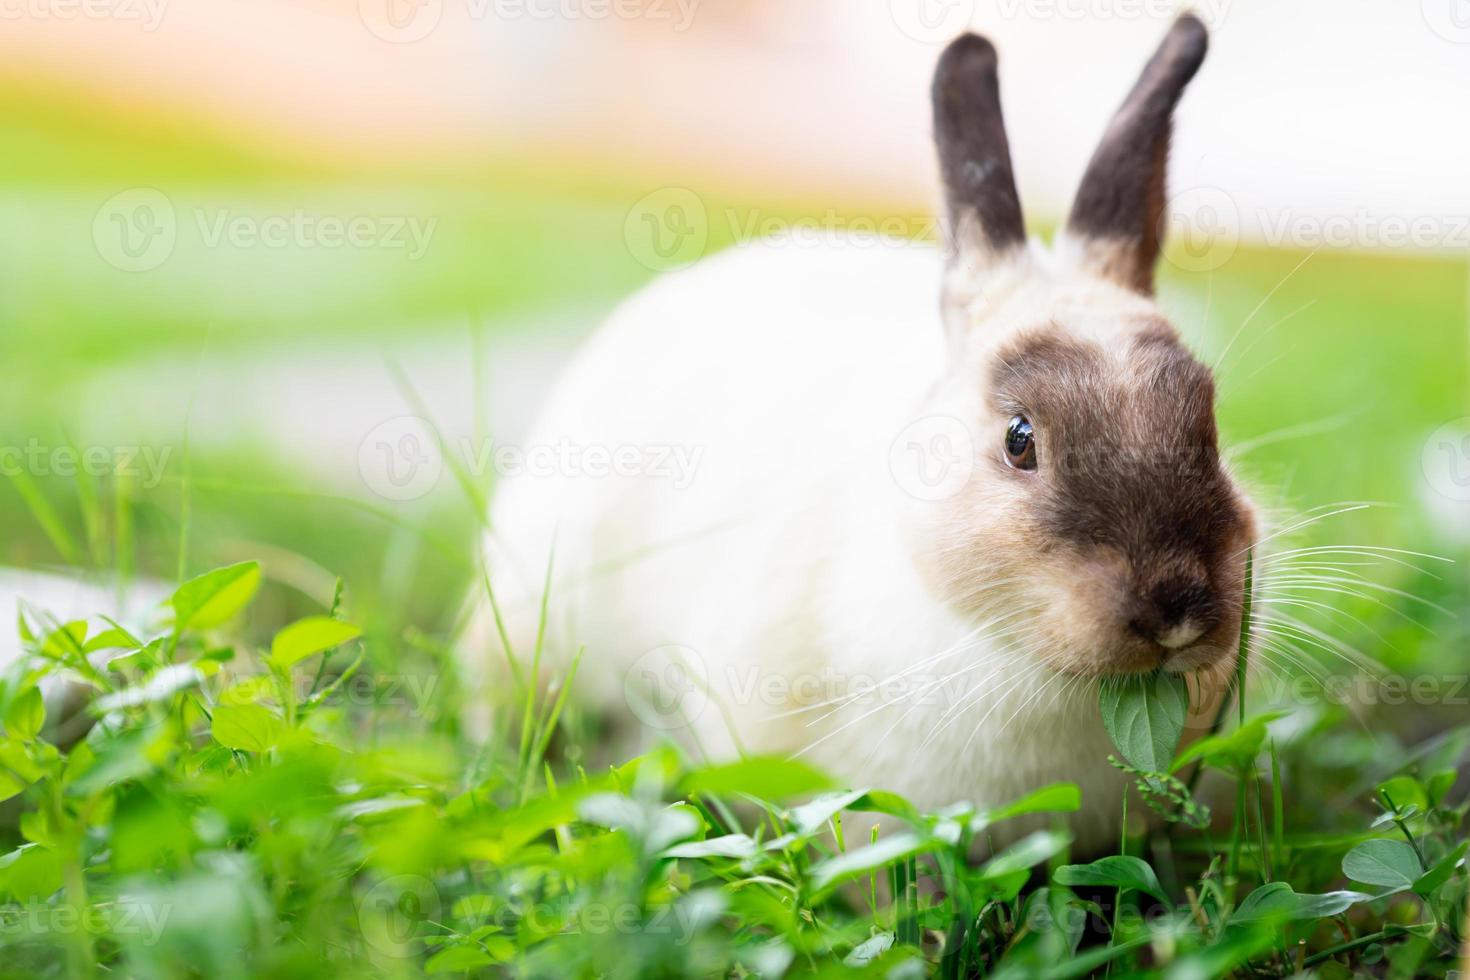 simpatico coniglietto nel prato fresco verde. coniglio sta mangiando deliziose foglie verdi giovani. foto